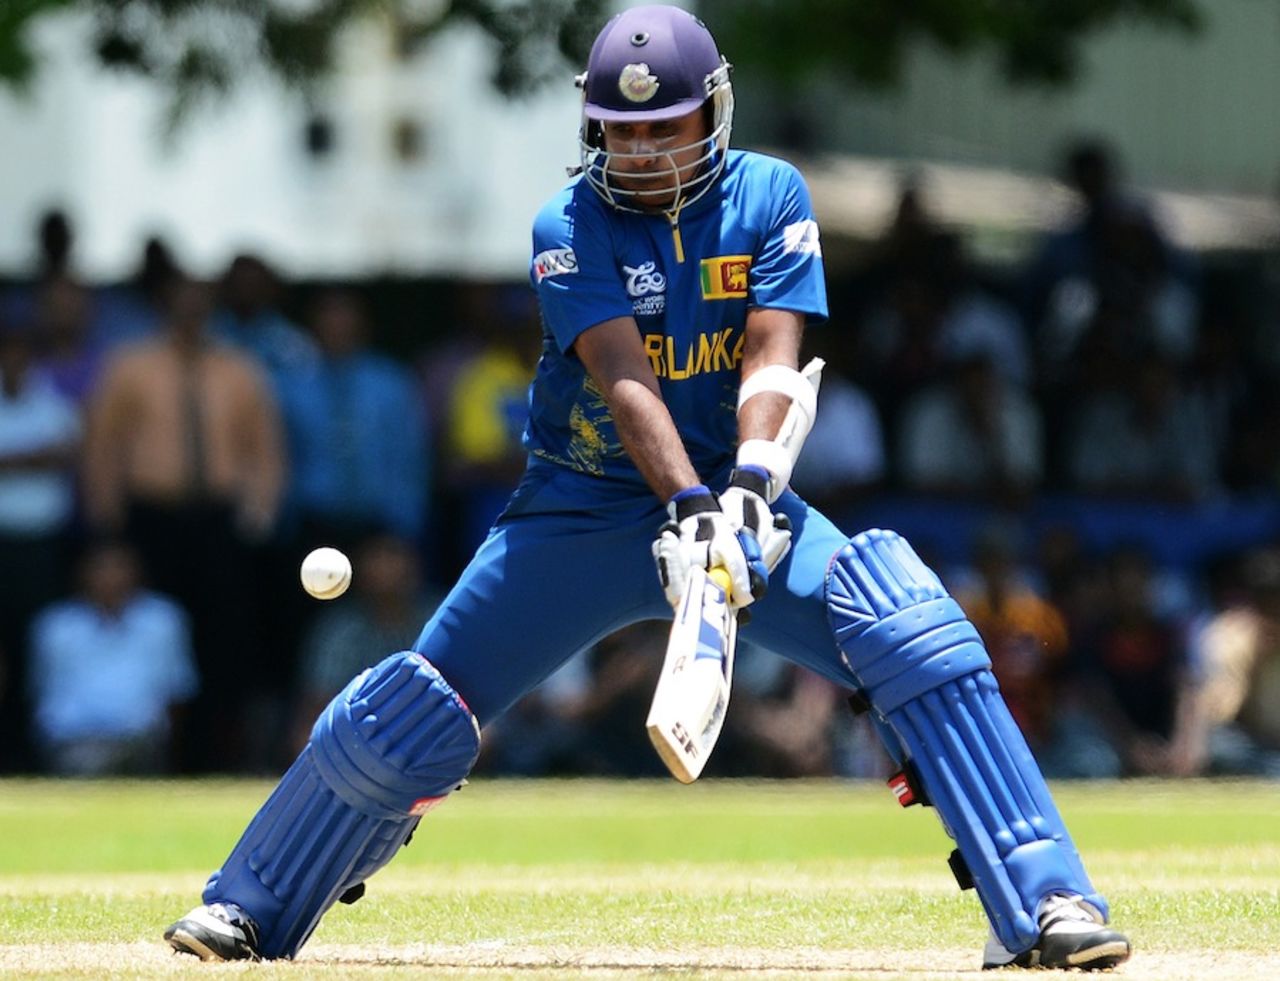 Mahela Jayawardene scored a half-century, Sri Lanka v West Indies, World Twenty20 2012 warm-up, Colombo, September 13, 2012